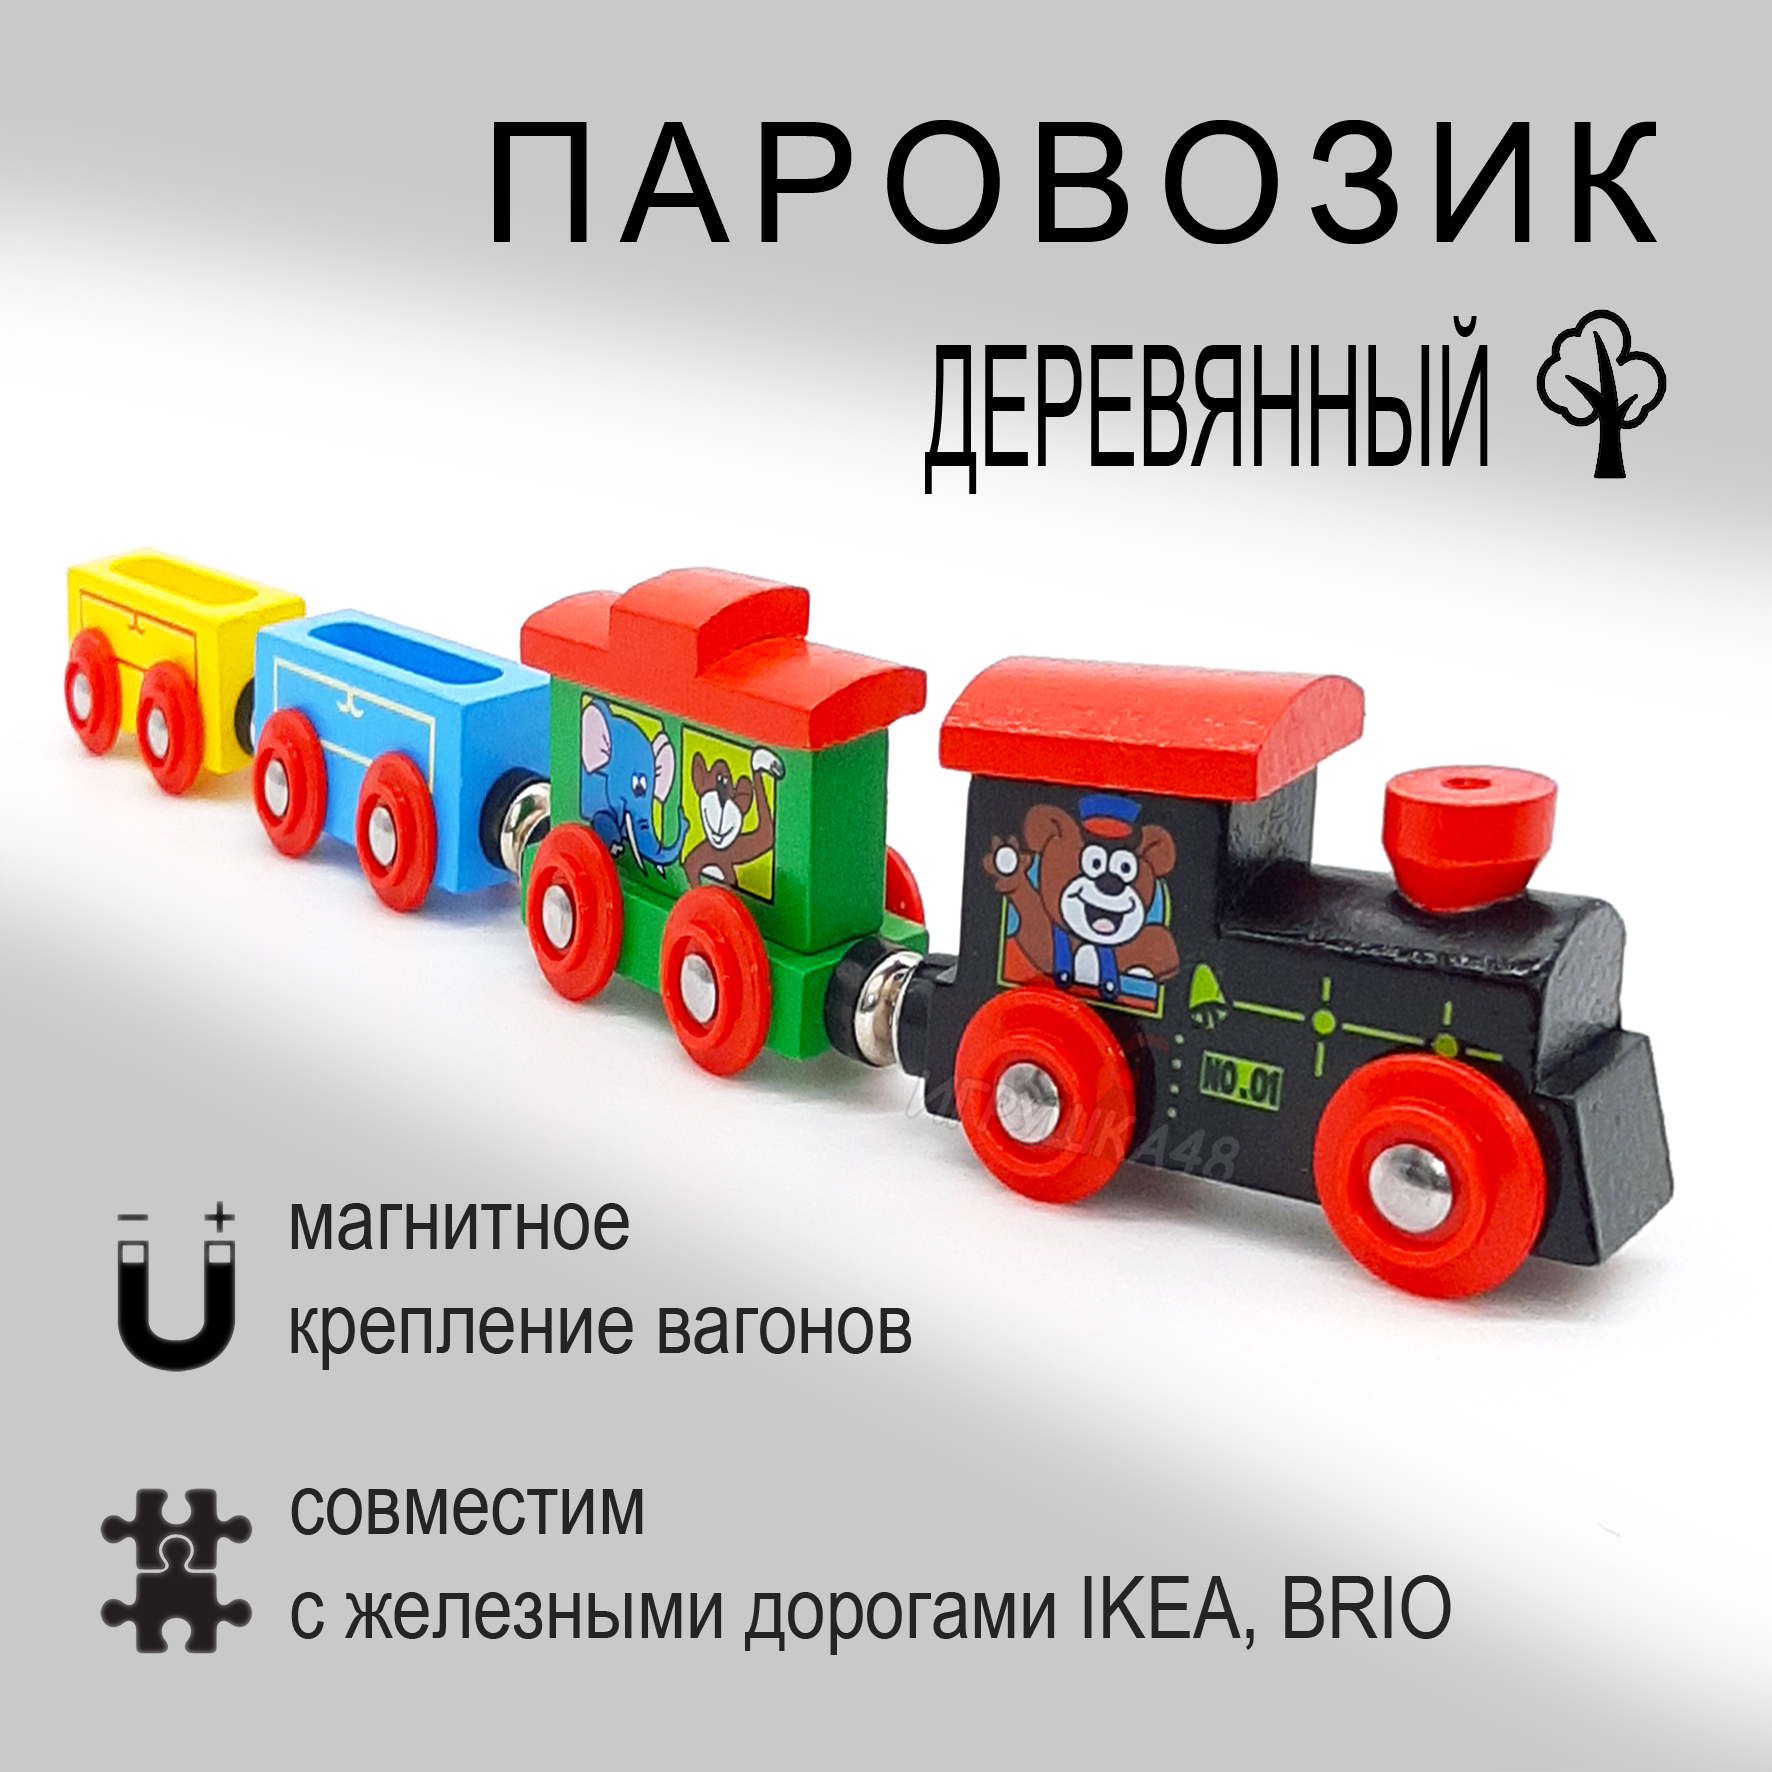 Паровозик магнитный деревянный для игровой железной дороги, Зверюшки паровозик утенок в блистере роботы поезда